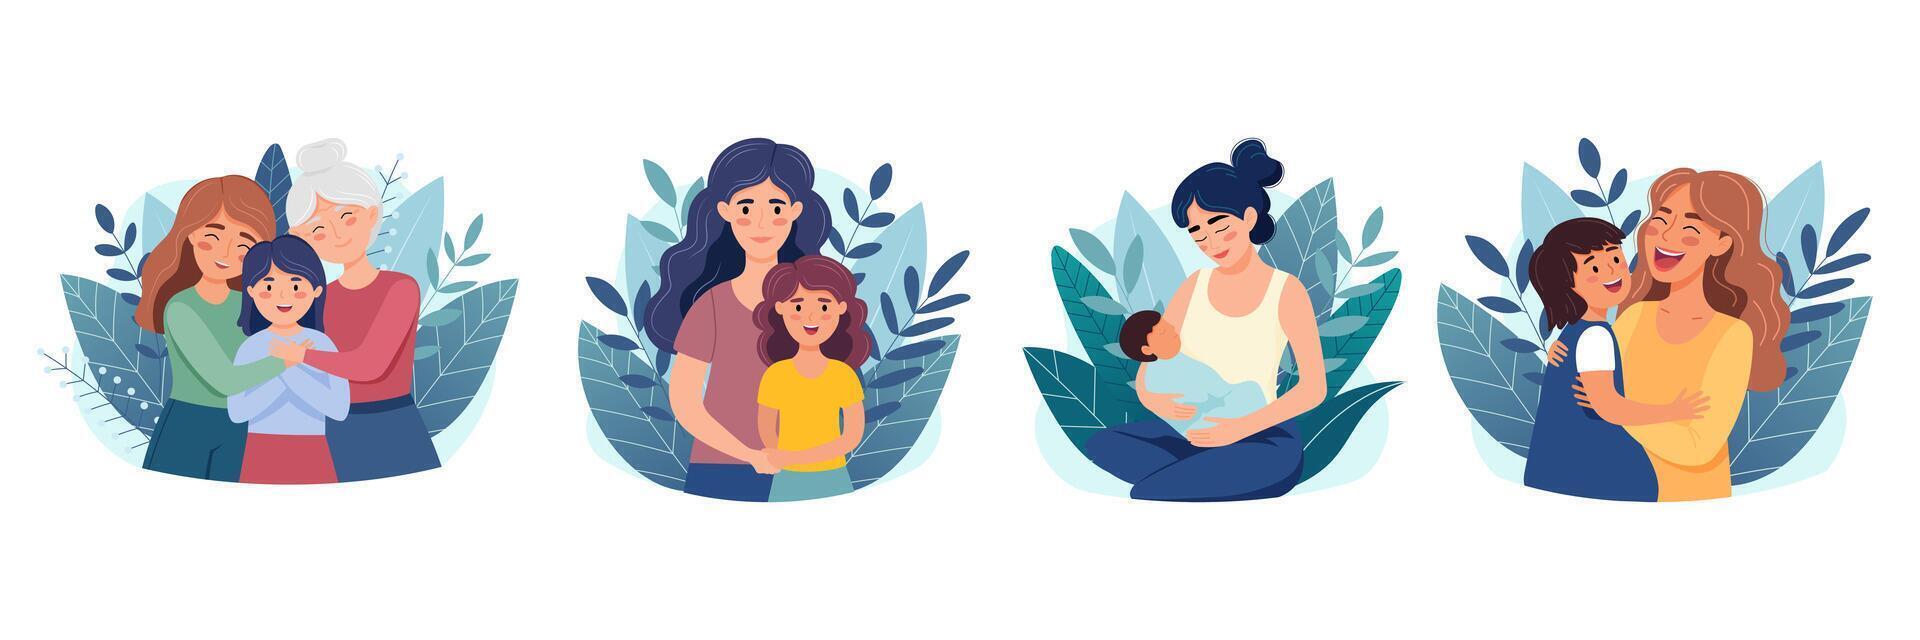 uppsättning av illustration för mödrar dag, begrepp av Lycklig moderskap, kvinnor med ungar. färgrik vektor illustrationer i tecknad serie platt stil